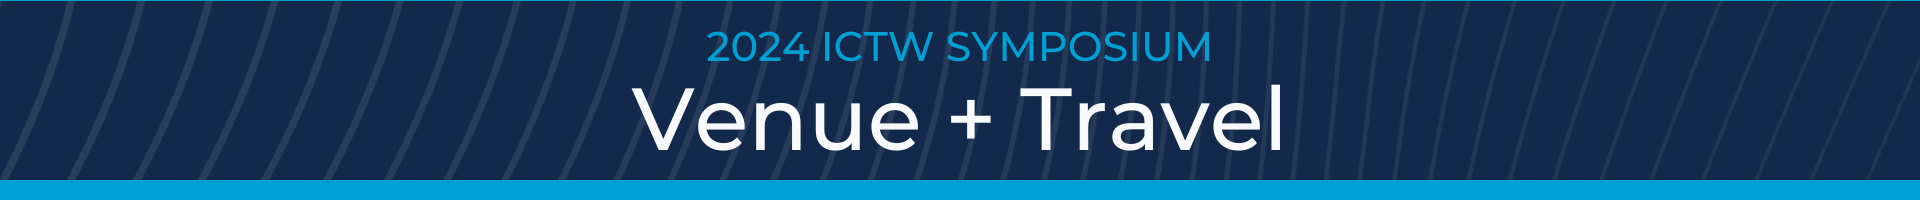 2024 ICTW Symposium: Venue + Travel